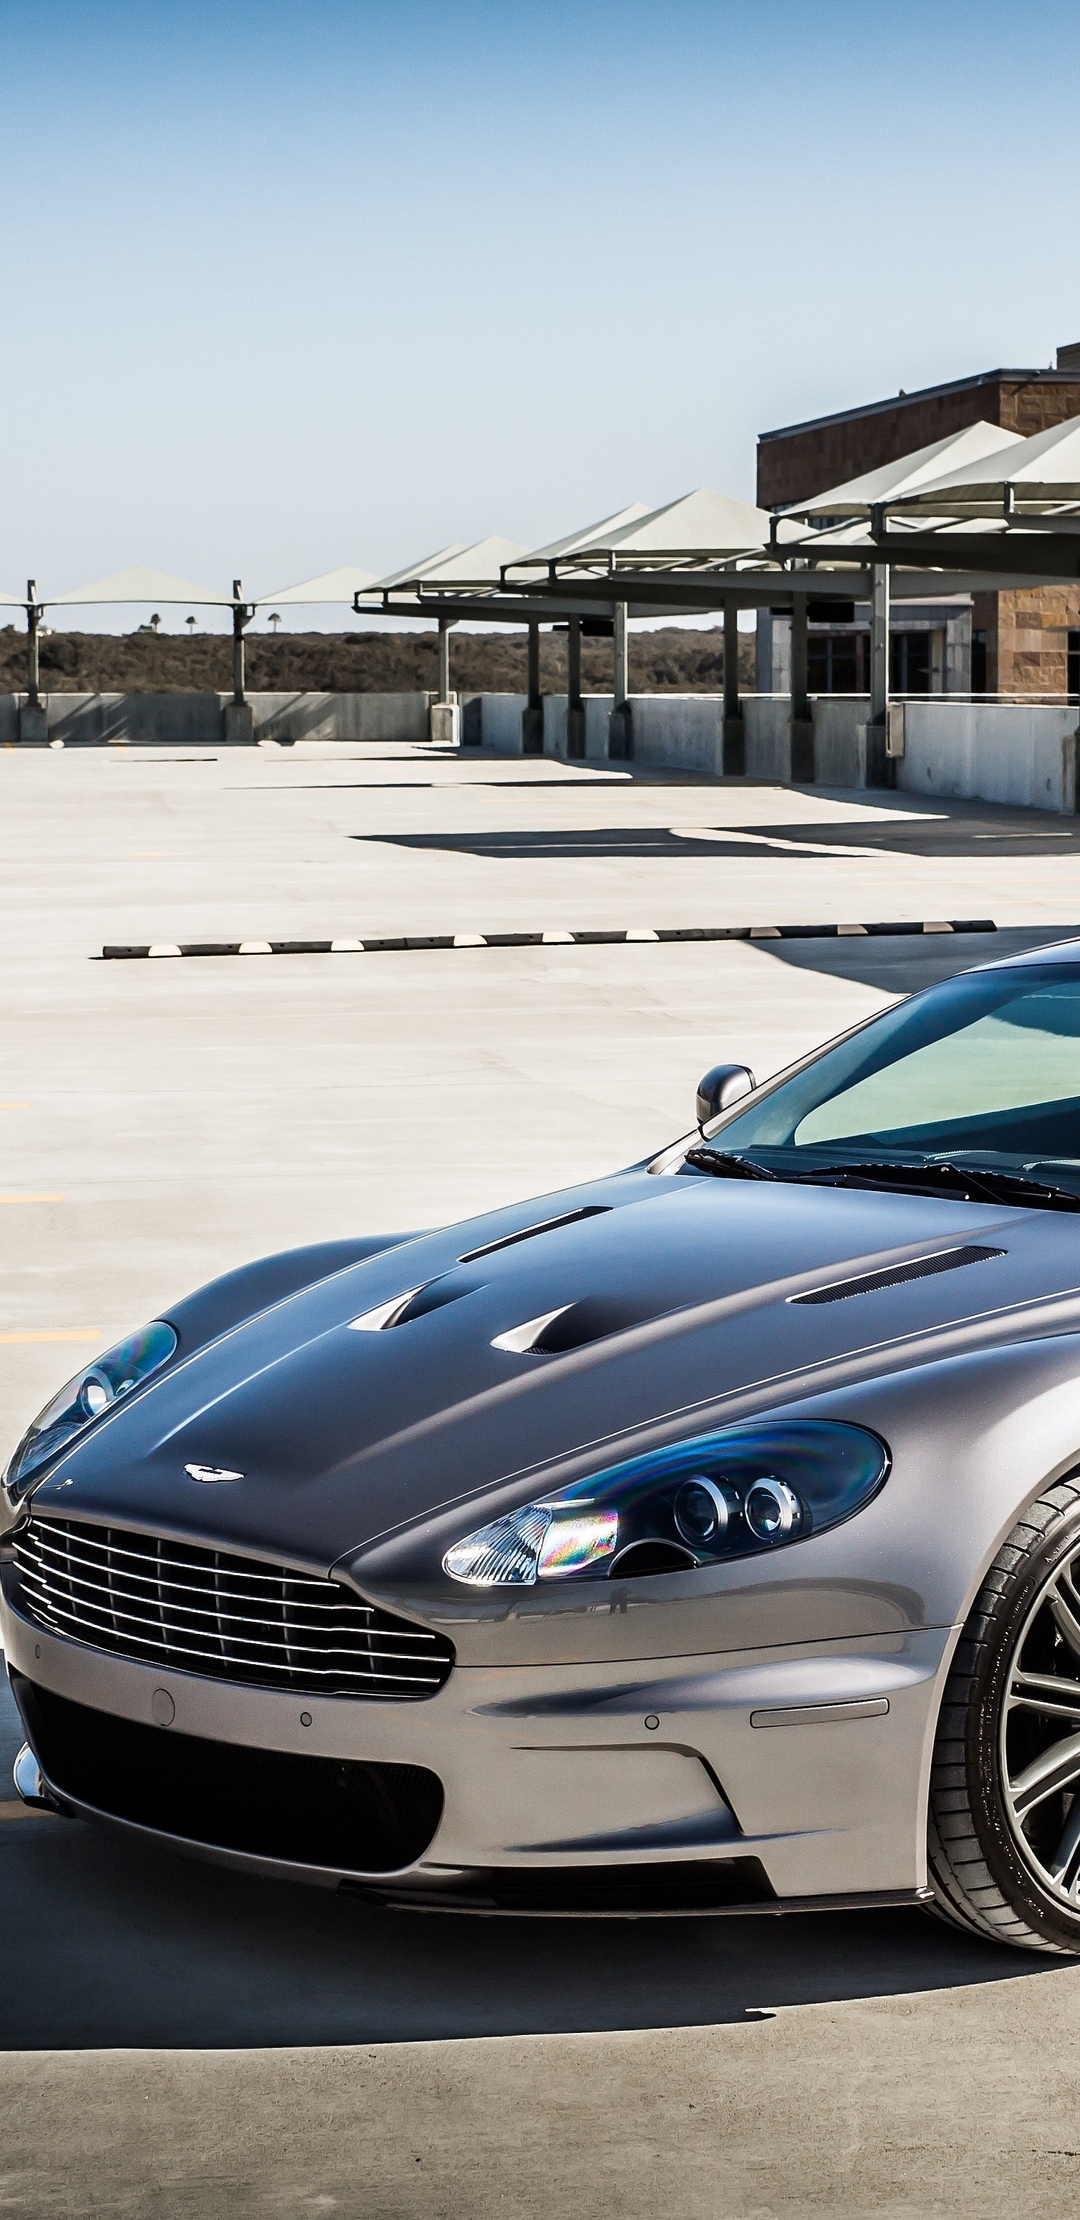 Картинка: Aston Martin, серая, парковка, DBS, солнечный день